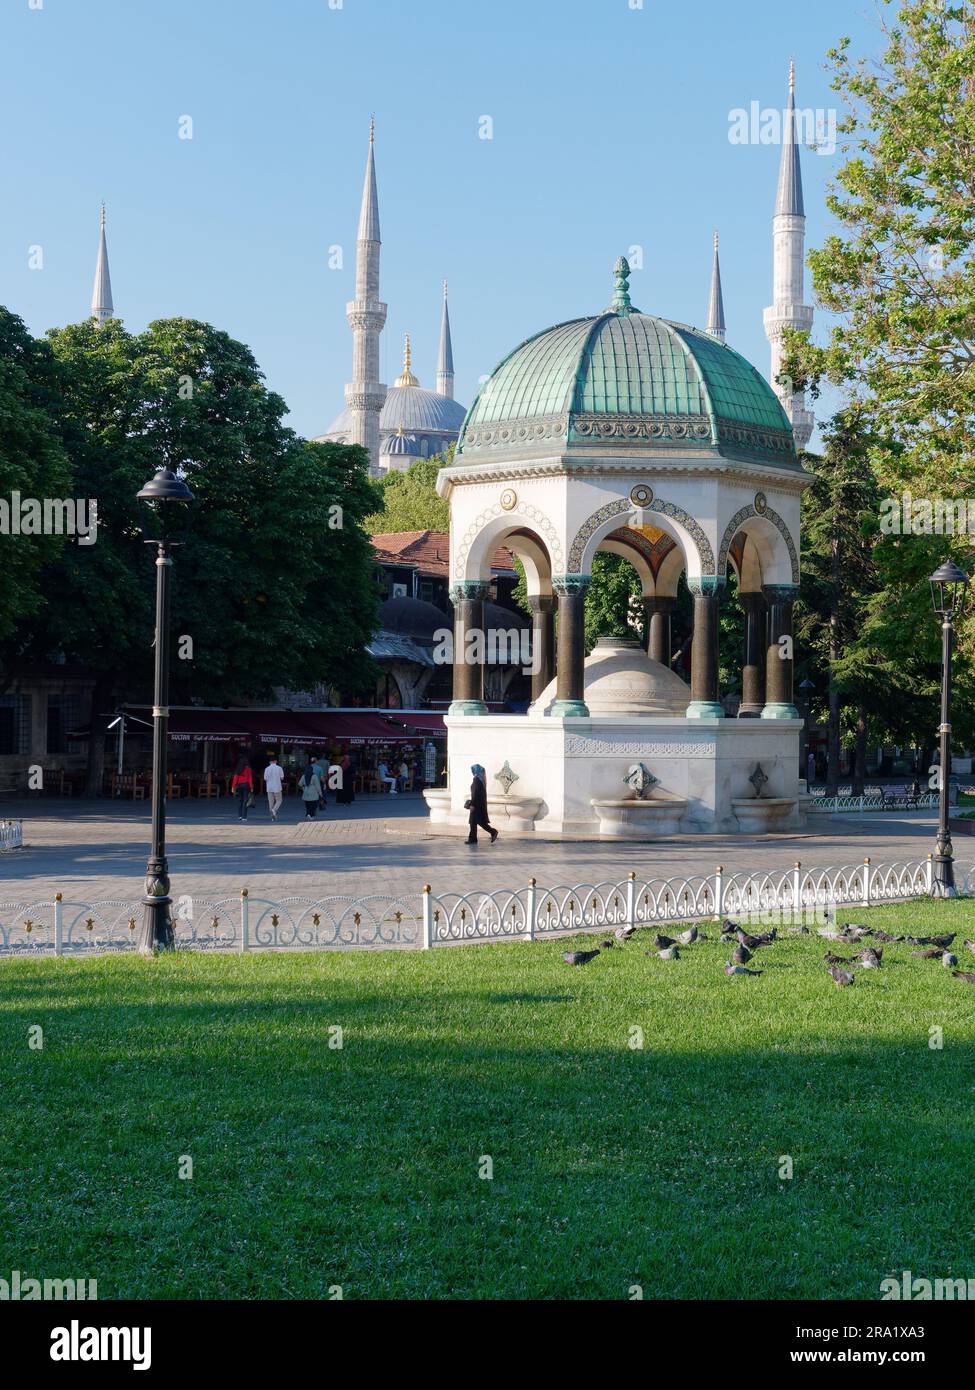 Fontaine allemande (Alman Çeşmesi en turc), quartier Sultanahmet, Istanbul, Turquie. Sultan Ahmed aka Mosquée Bleue derrière. Banque D'Images